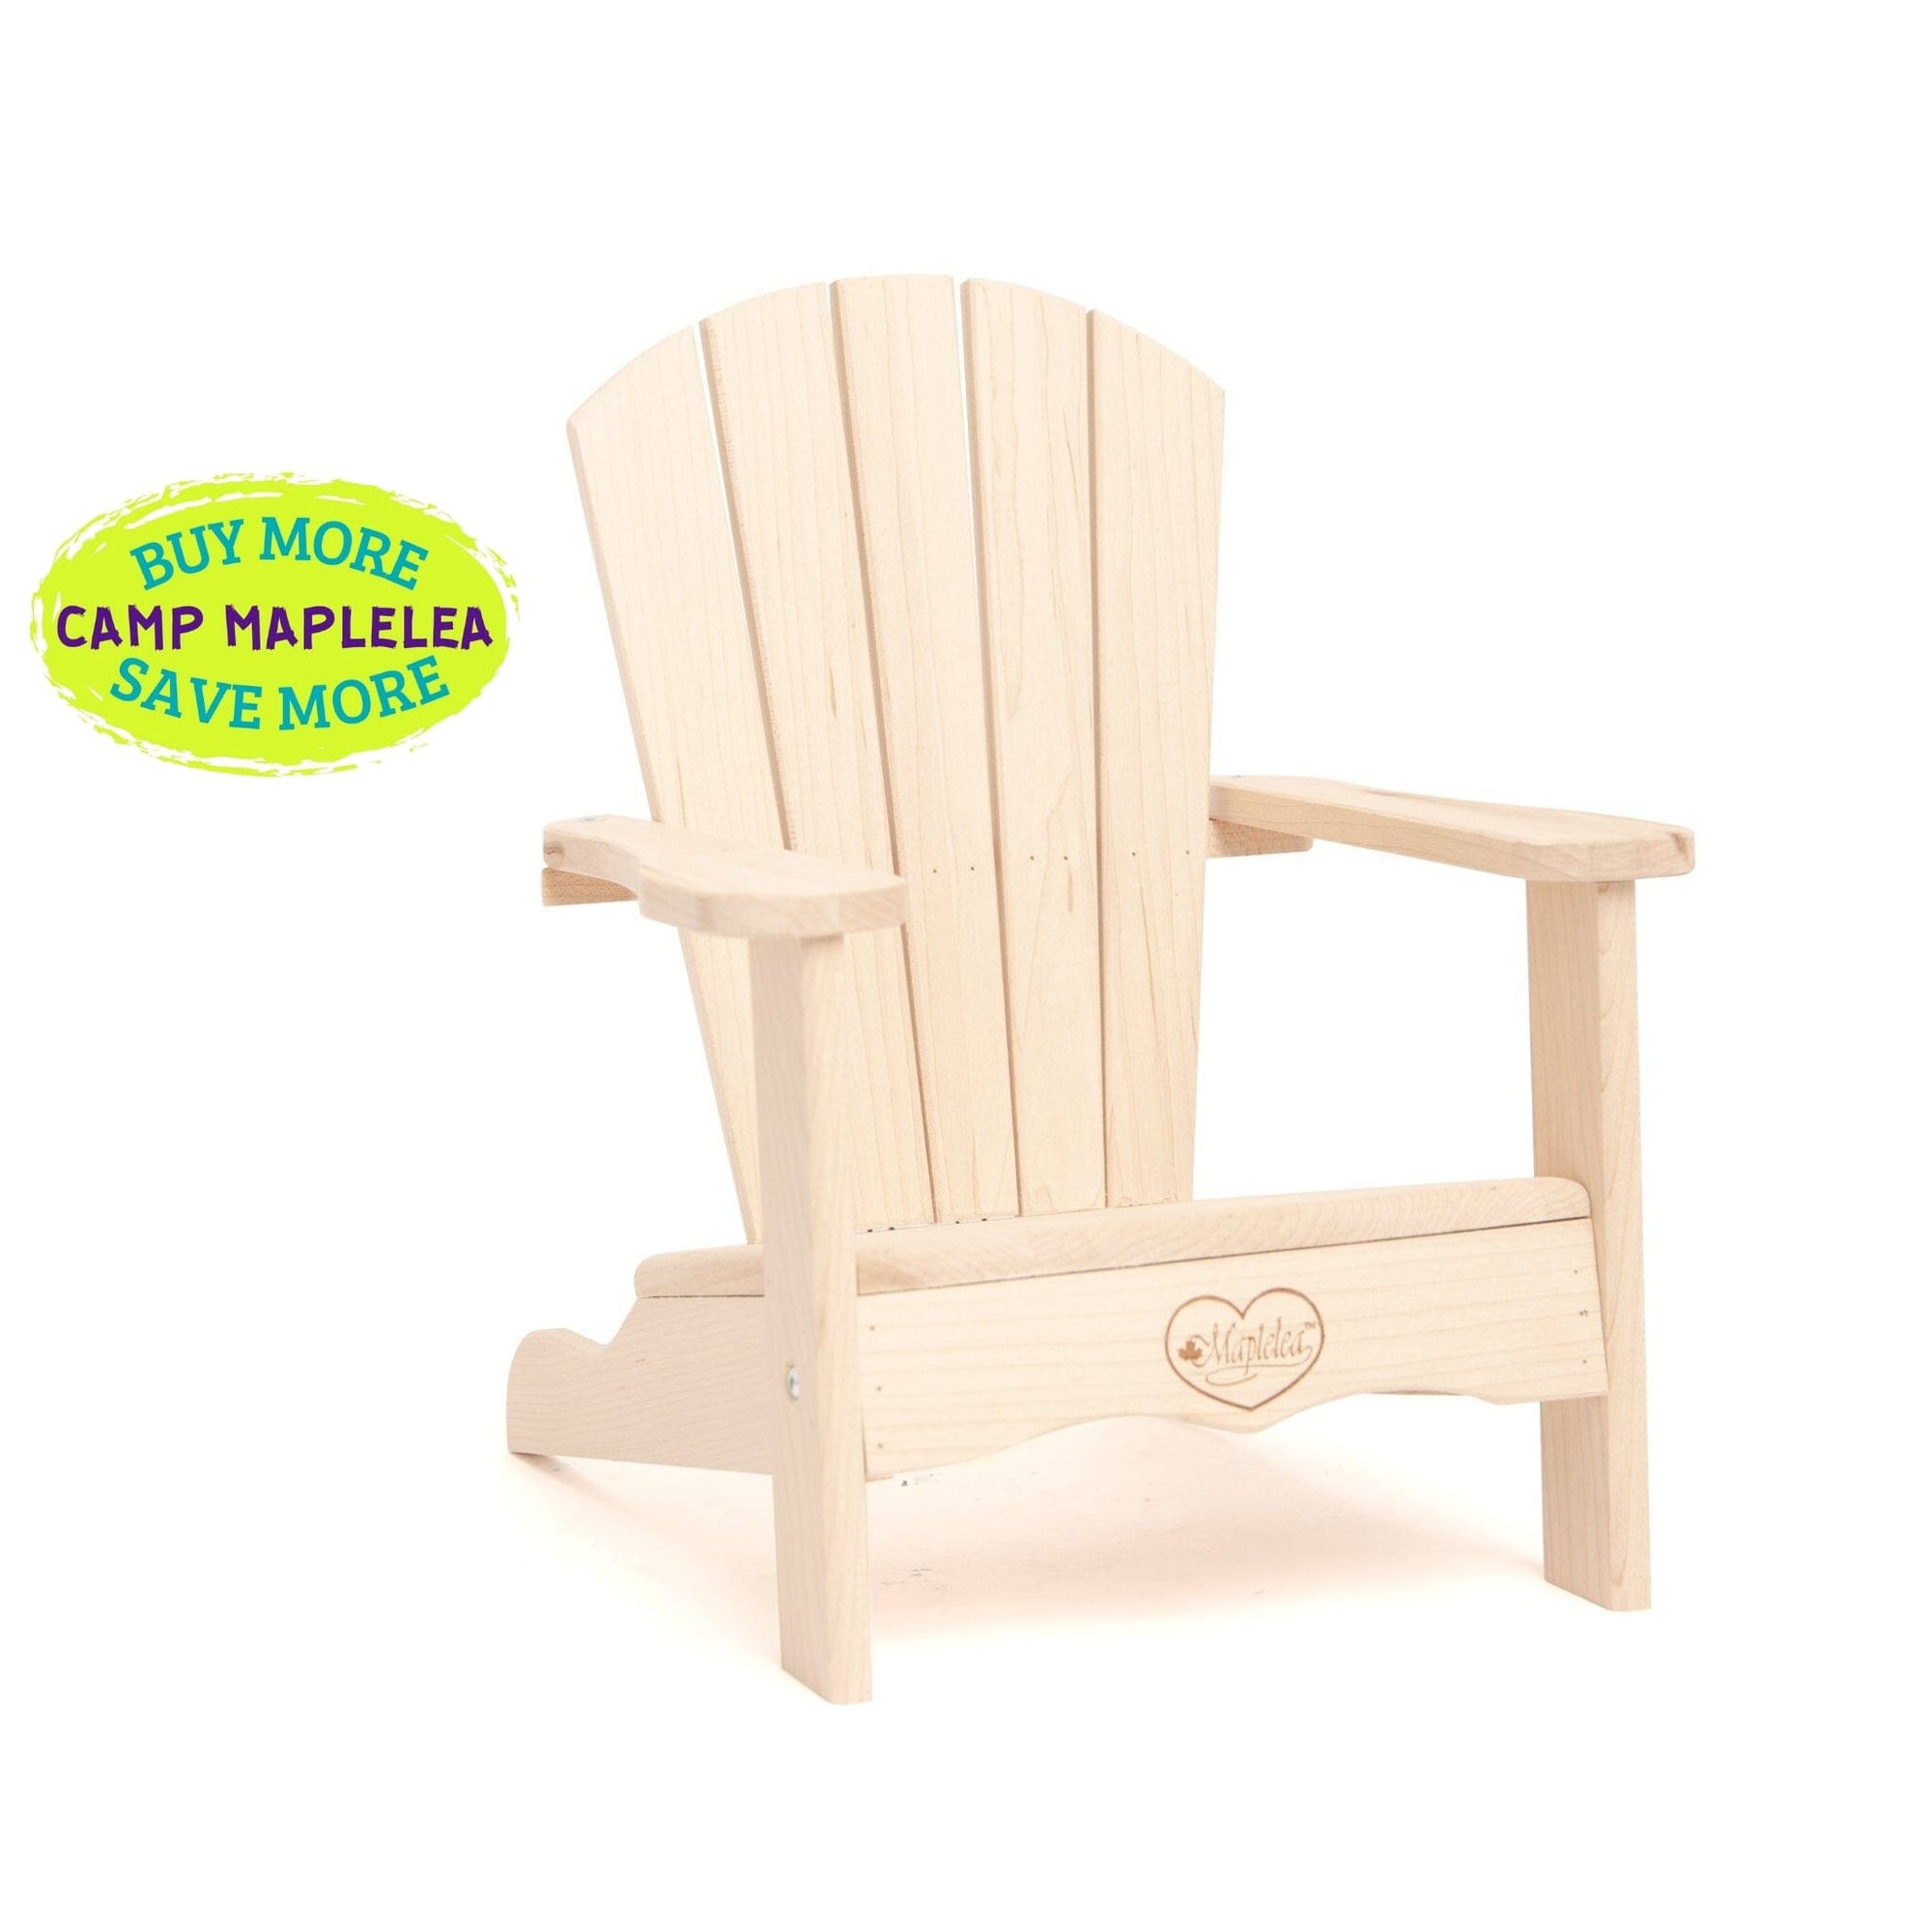 Maplelea Muskoka wood chair for 18-inch dolls Canada